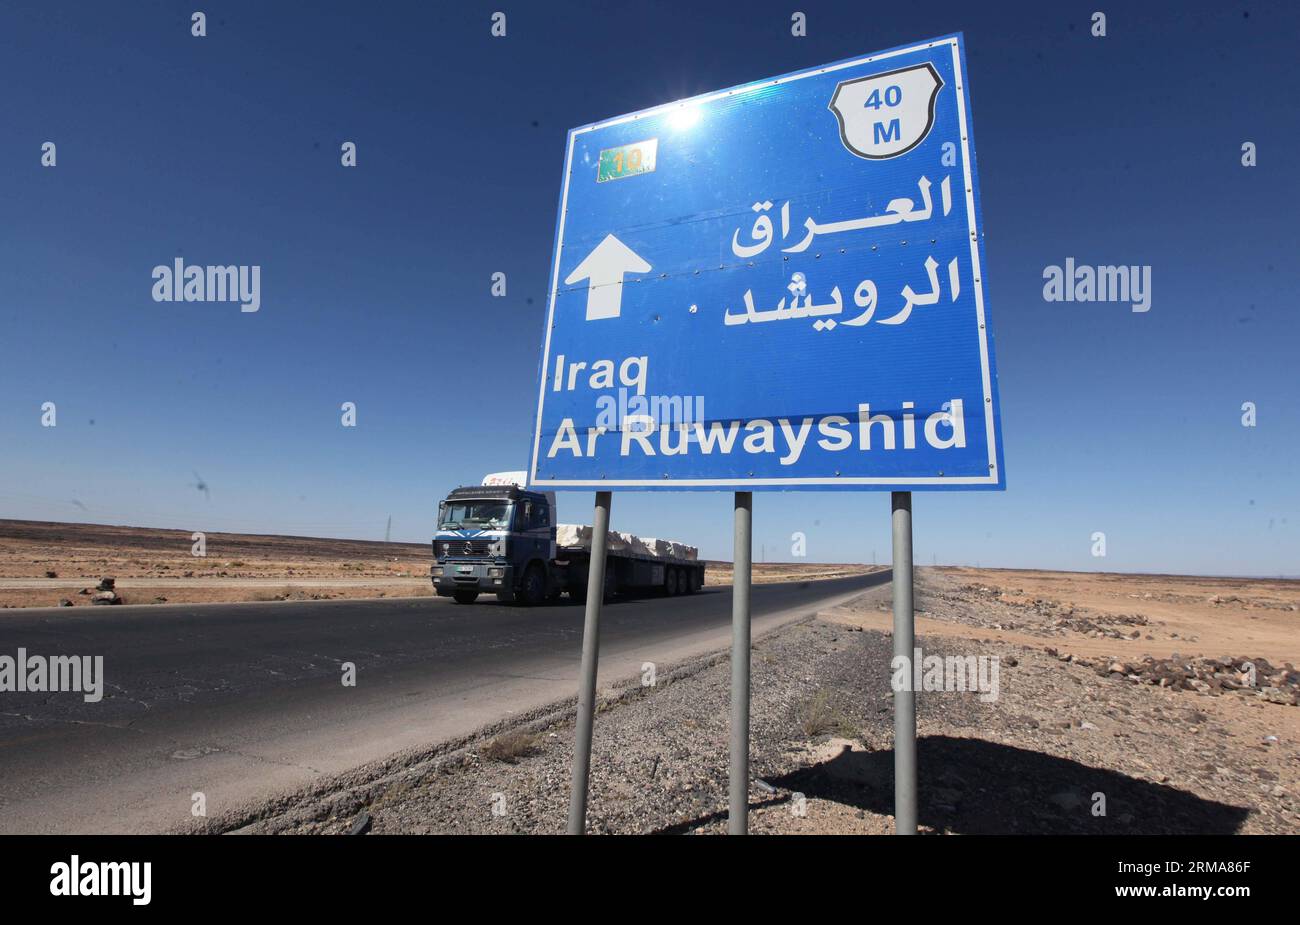 (140624) -- ATTRAVERSAMENTO DI AL KARAMAH, 24 giugno 2014 (Xinhua) -- Un camion giordano è visto vicino a un cartello che mostra la distanza da AR Ruwayshid, vicino al confine iracheno, il 23 giugno 2014. Lunedì la Giordania ha iniziato a mobilitare le forze lungo il confine con l'Iraq per evitare infiltrazioni di militanti sunniti in un peggioramento della situazione della sicurezza in Iraq. (Xinhua/Mohammad Abu Ghosh) (zjl) JORDAN-AL KARAMAH CROSSING-IRAQ-PREVENTION PUBLICATIONxNOTxINxCHN al Crossing 24 giugno 2014 XINHUA un camion giordano È Lakes Near a Sign Thatcher mostra la distanza dall'AR vicino al confine iracheno IL 2 giugno Foto Stock